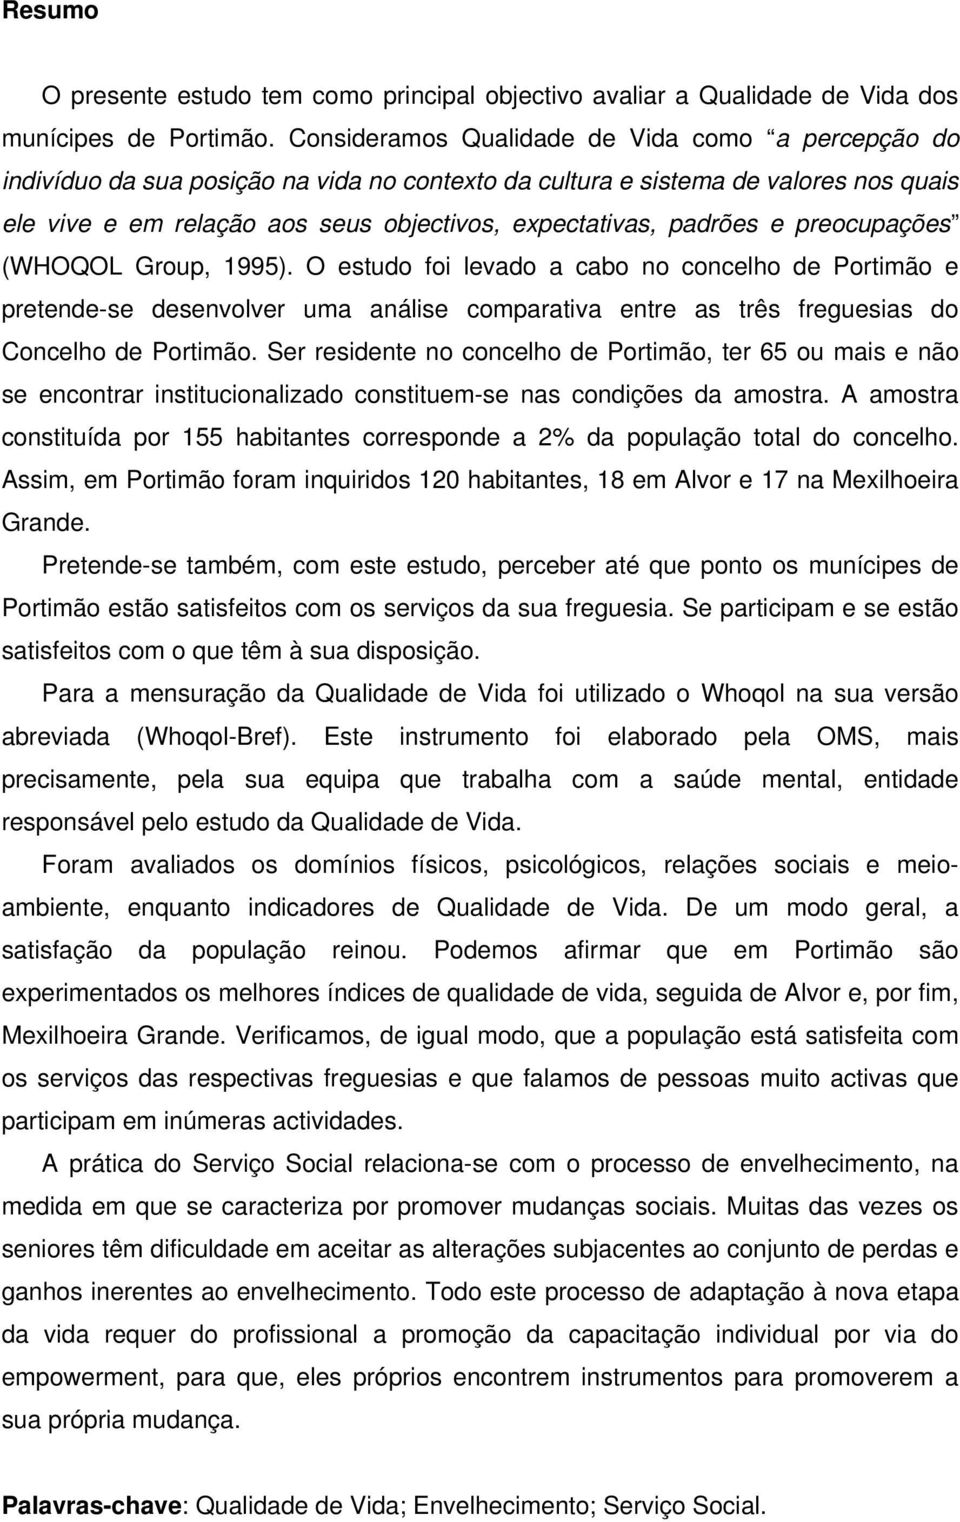 padrões e preocupações (WHOQOL Group, 1995). O estudo foi levado a cabo no concelho de Portimão e pretende-se desenvolver uma análise comparativa entre as três freguesias do Concelho de Portimão.